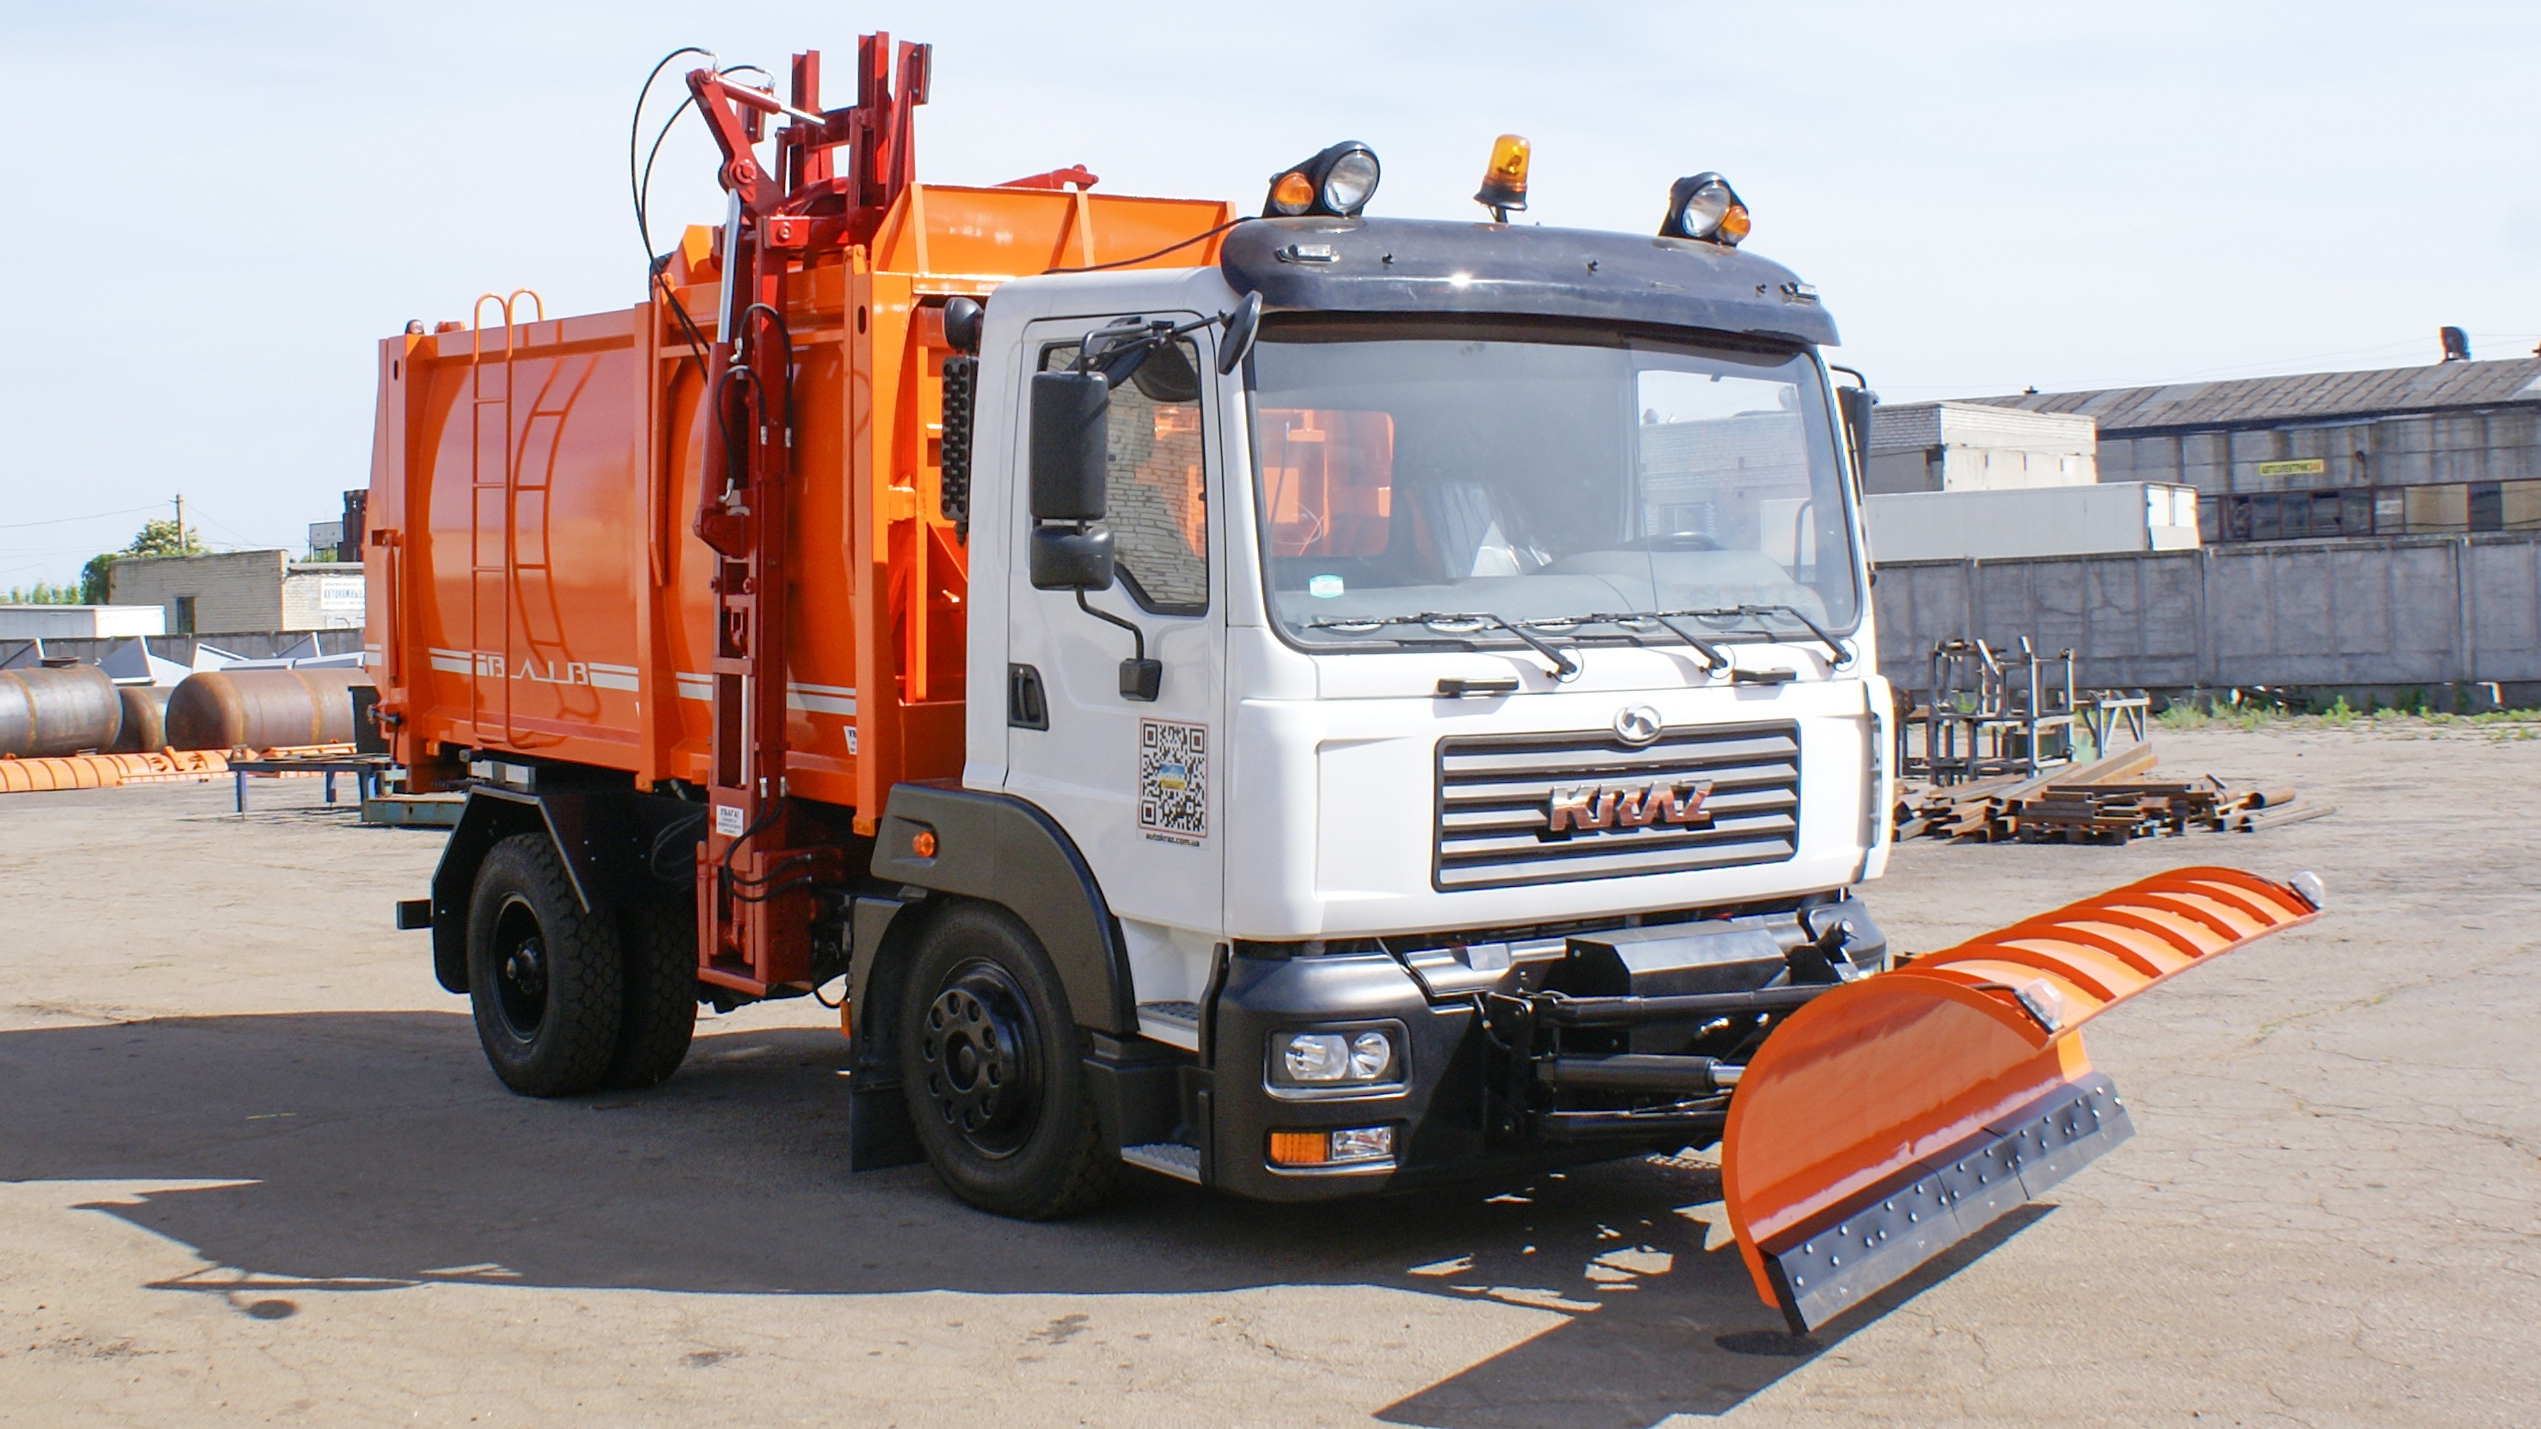 мусоровоз с боковой загрузкой ВЛИВ модели МИНИ Б на базе автомобильного шасси КрАЗ